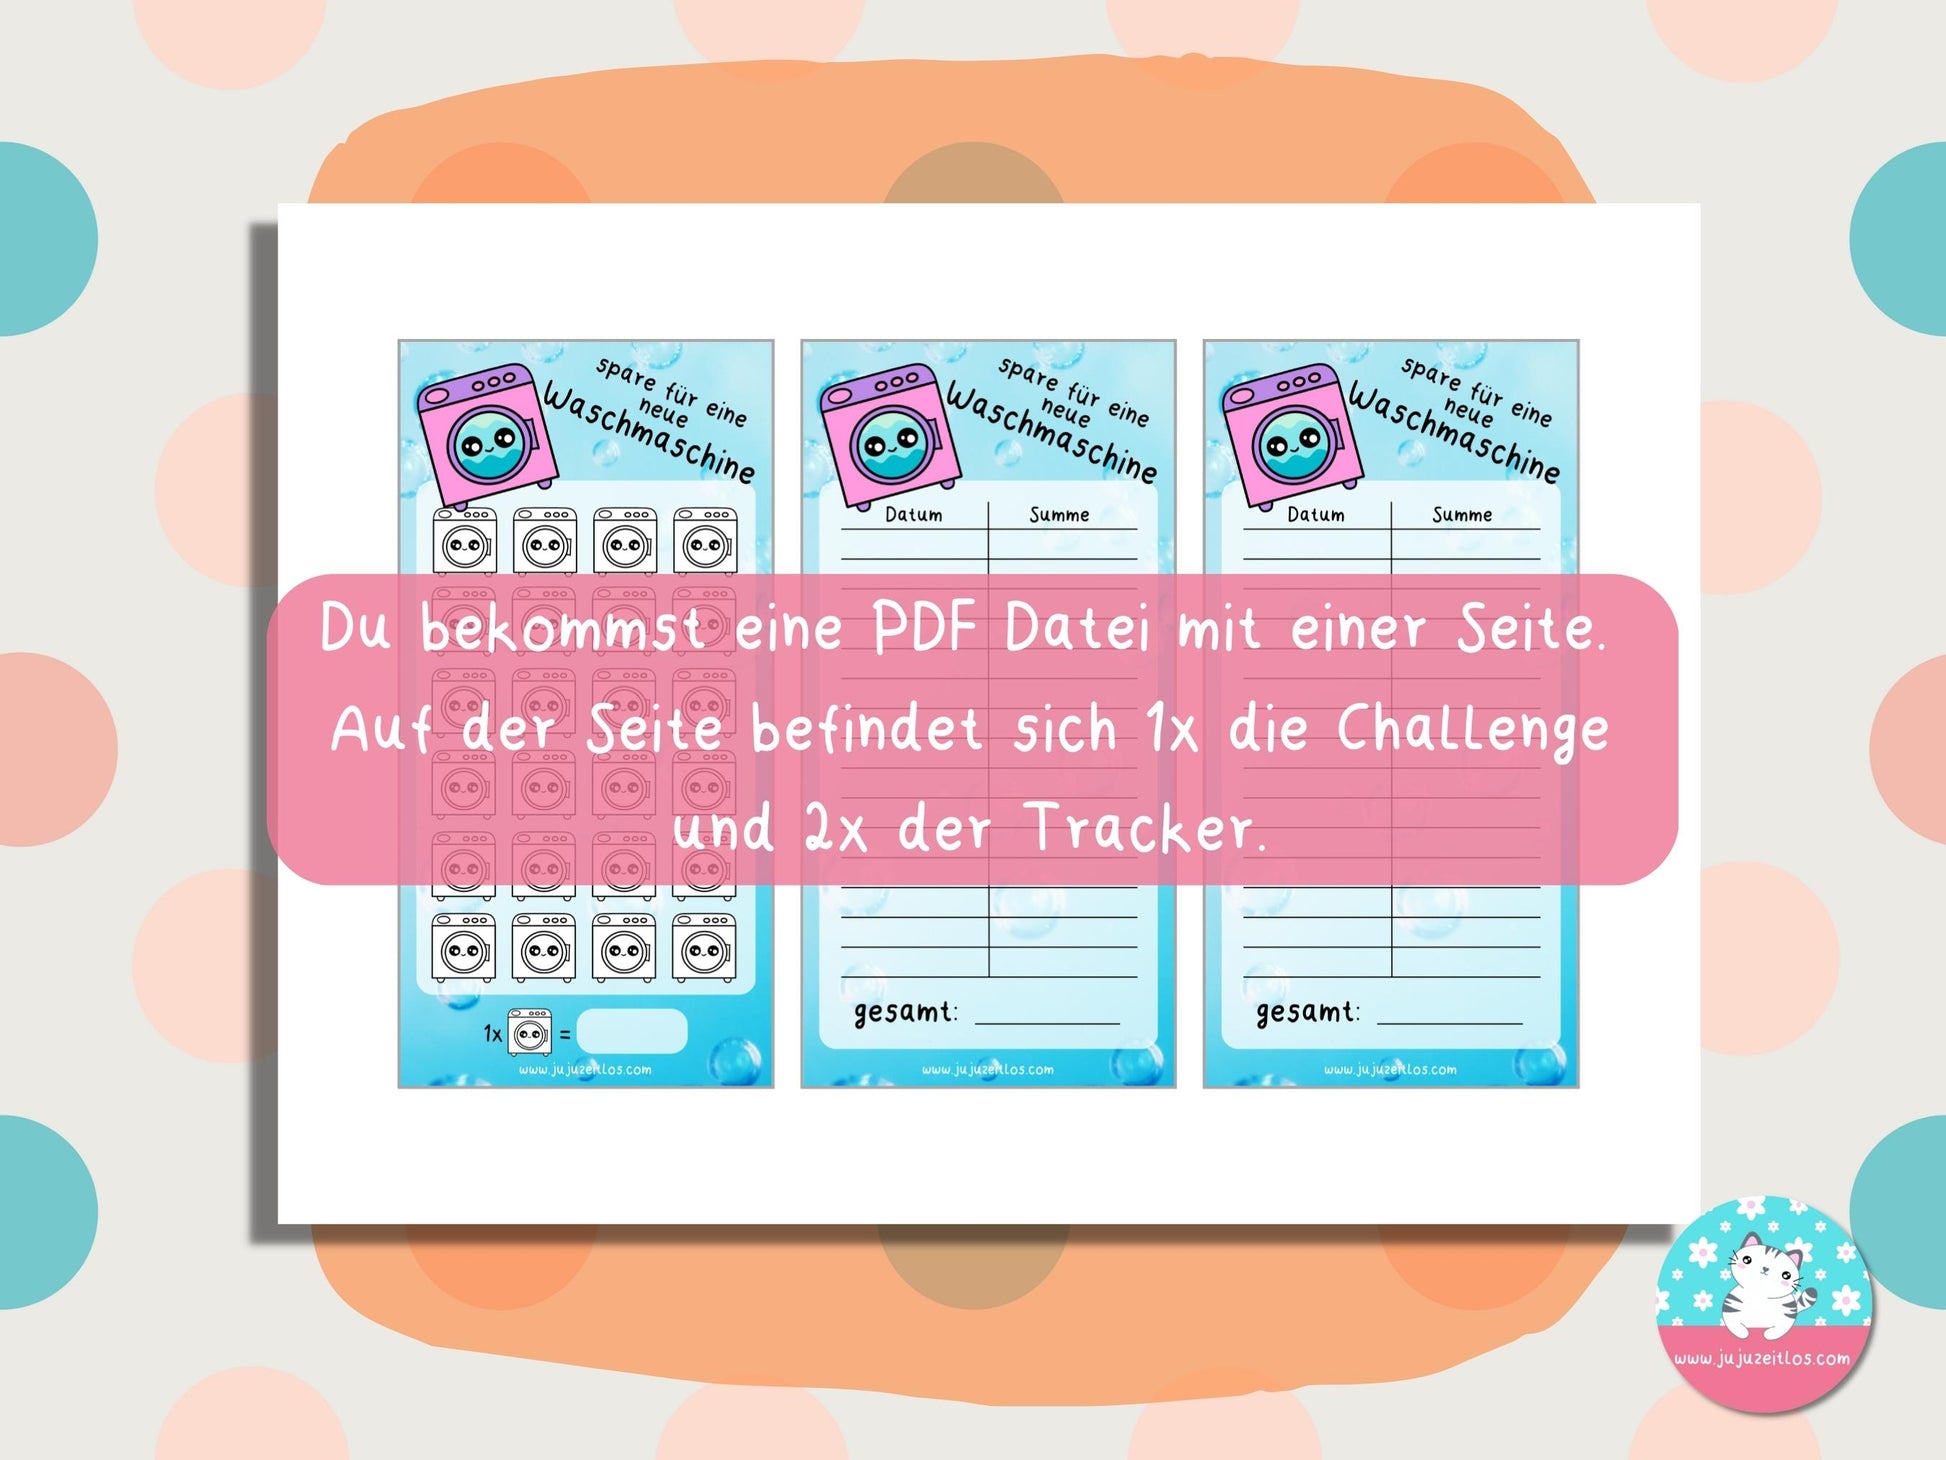 Challenge neue Waschmaschine ♡Sparschallenges als Download A6♡ - JujuZeitlos